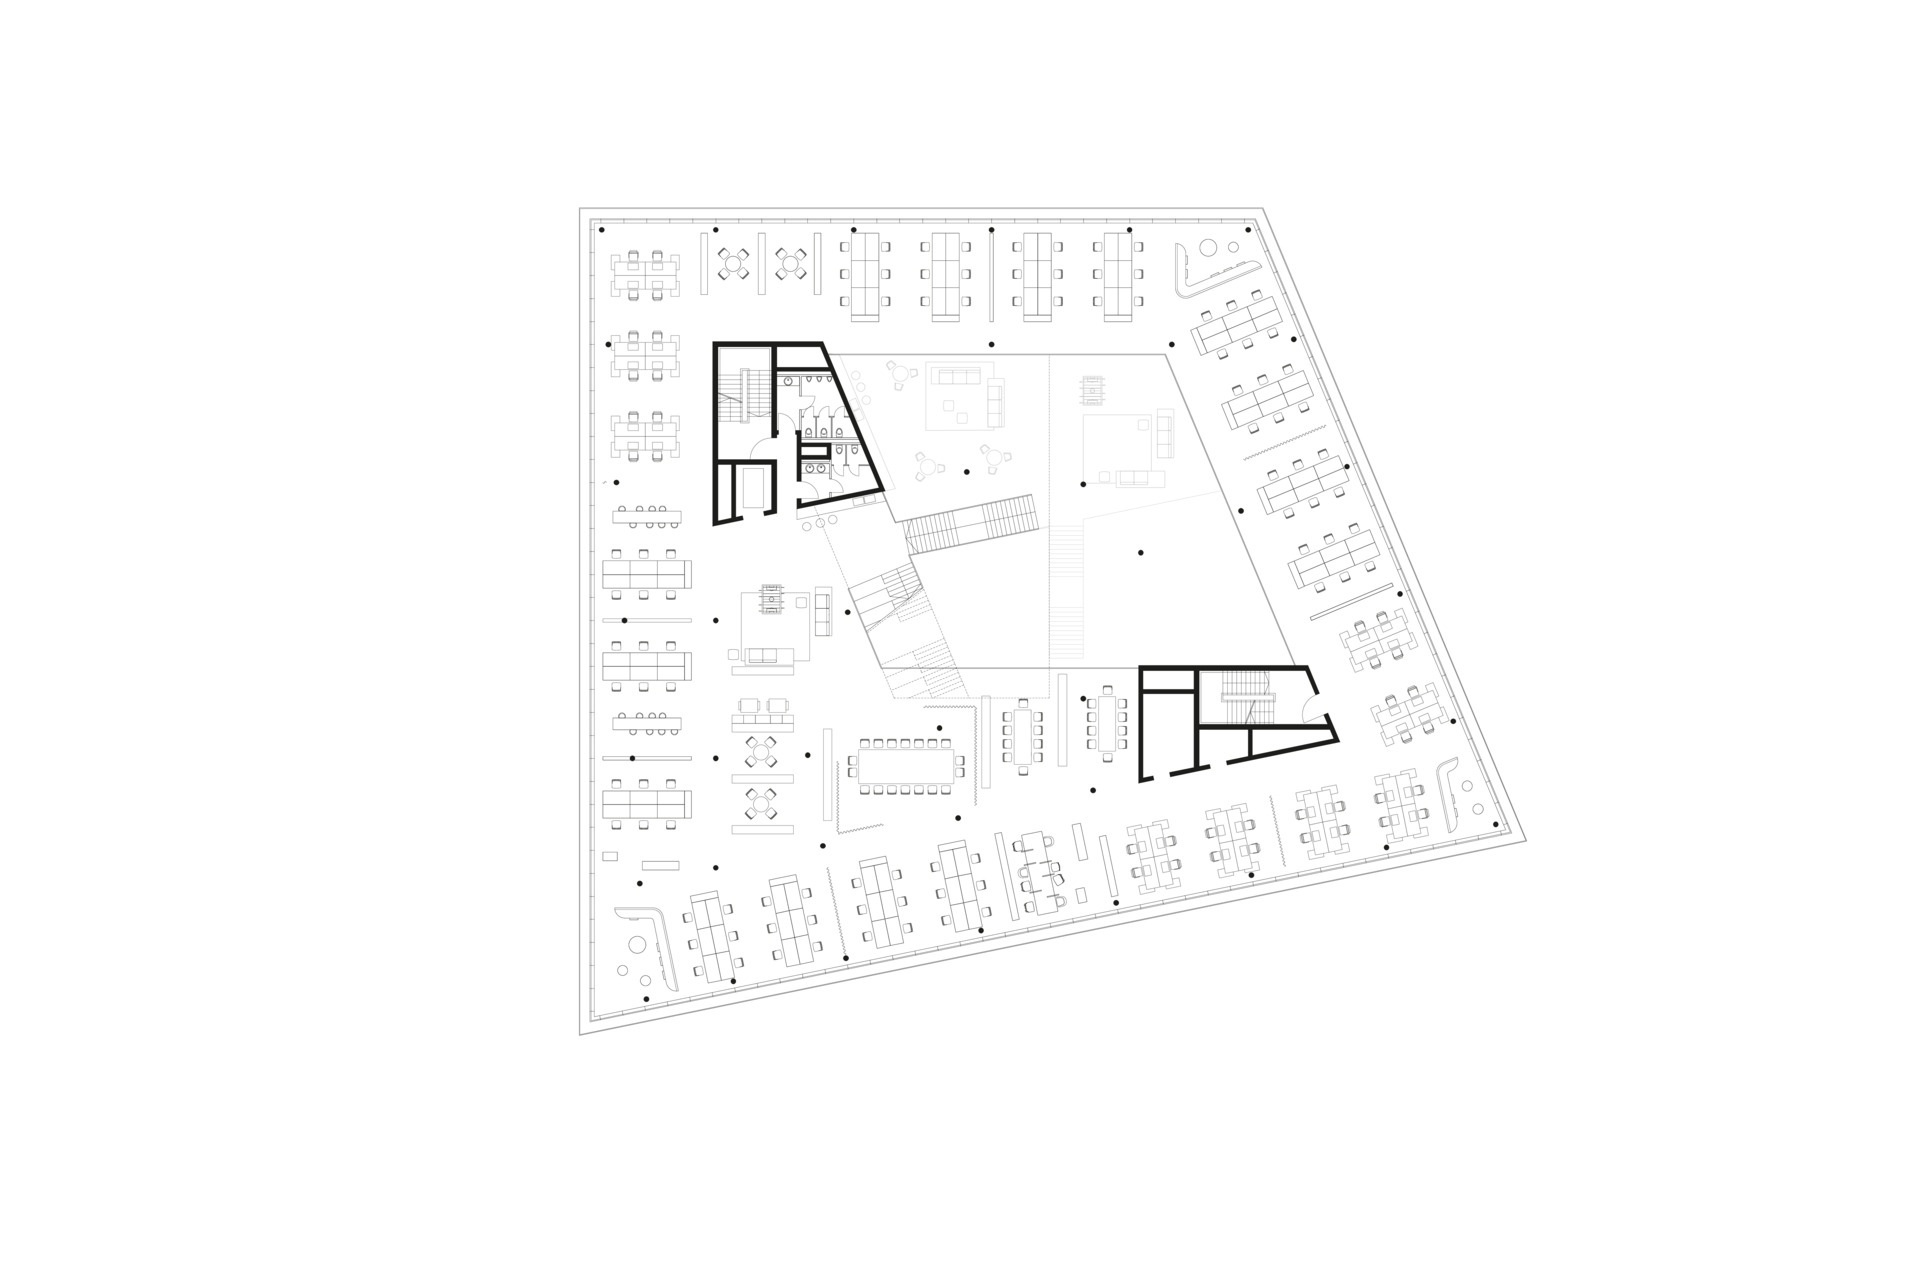 Floor plan - level 3